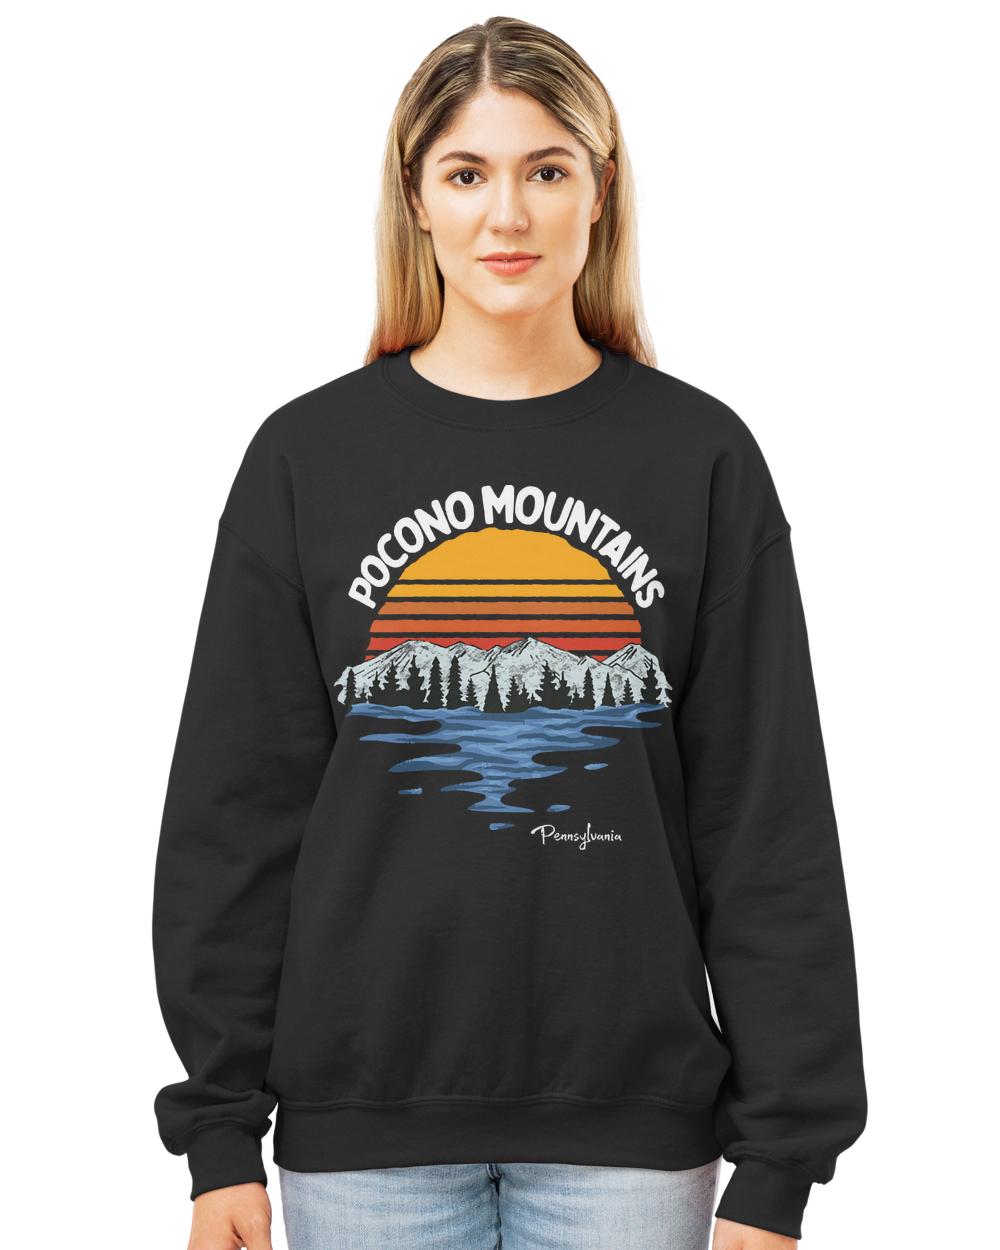 Pocono Mountains T- Shirt Pocono Mountains Pennsylvania Vintage Art T- Shirt